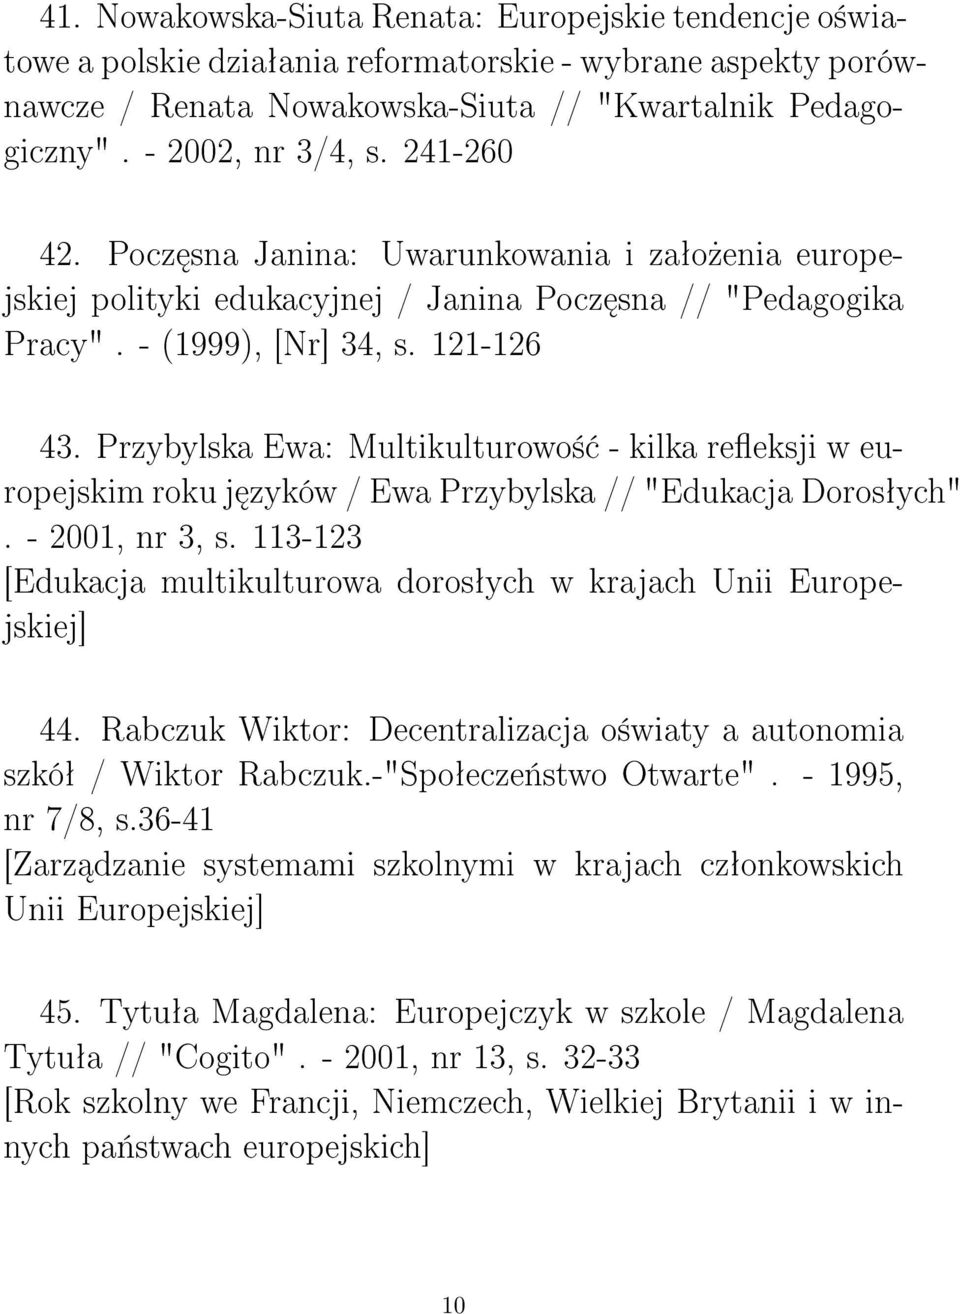 Przybylska Ewa: Multikulturowo± - kilka reeksji w europejskim roku j zyków / Ewa Przybylska // "Edukacja Dorosªych". - 2001, nr 3, s.